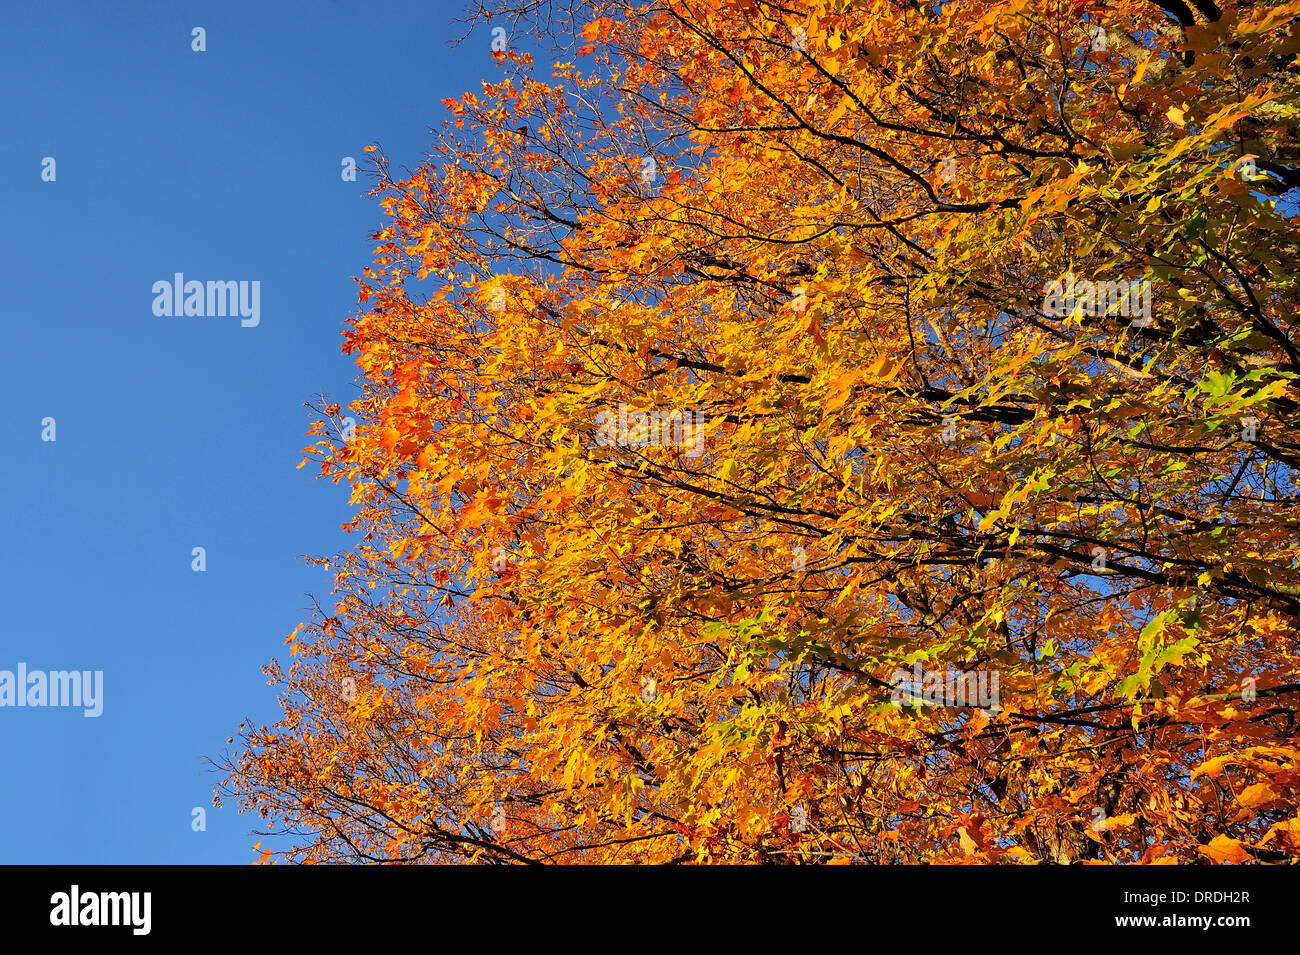 Guardando verso l'alto un acero rami di albero pieno di foglie girando il luminoso i colori giallo e arancione di caduta Foto Stock